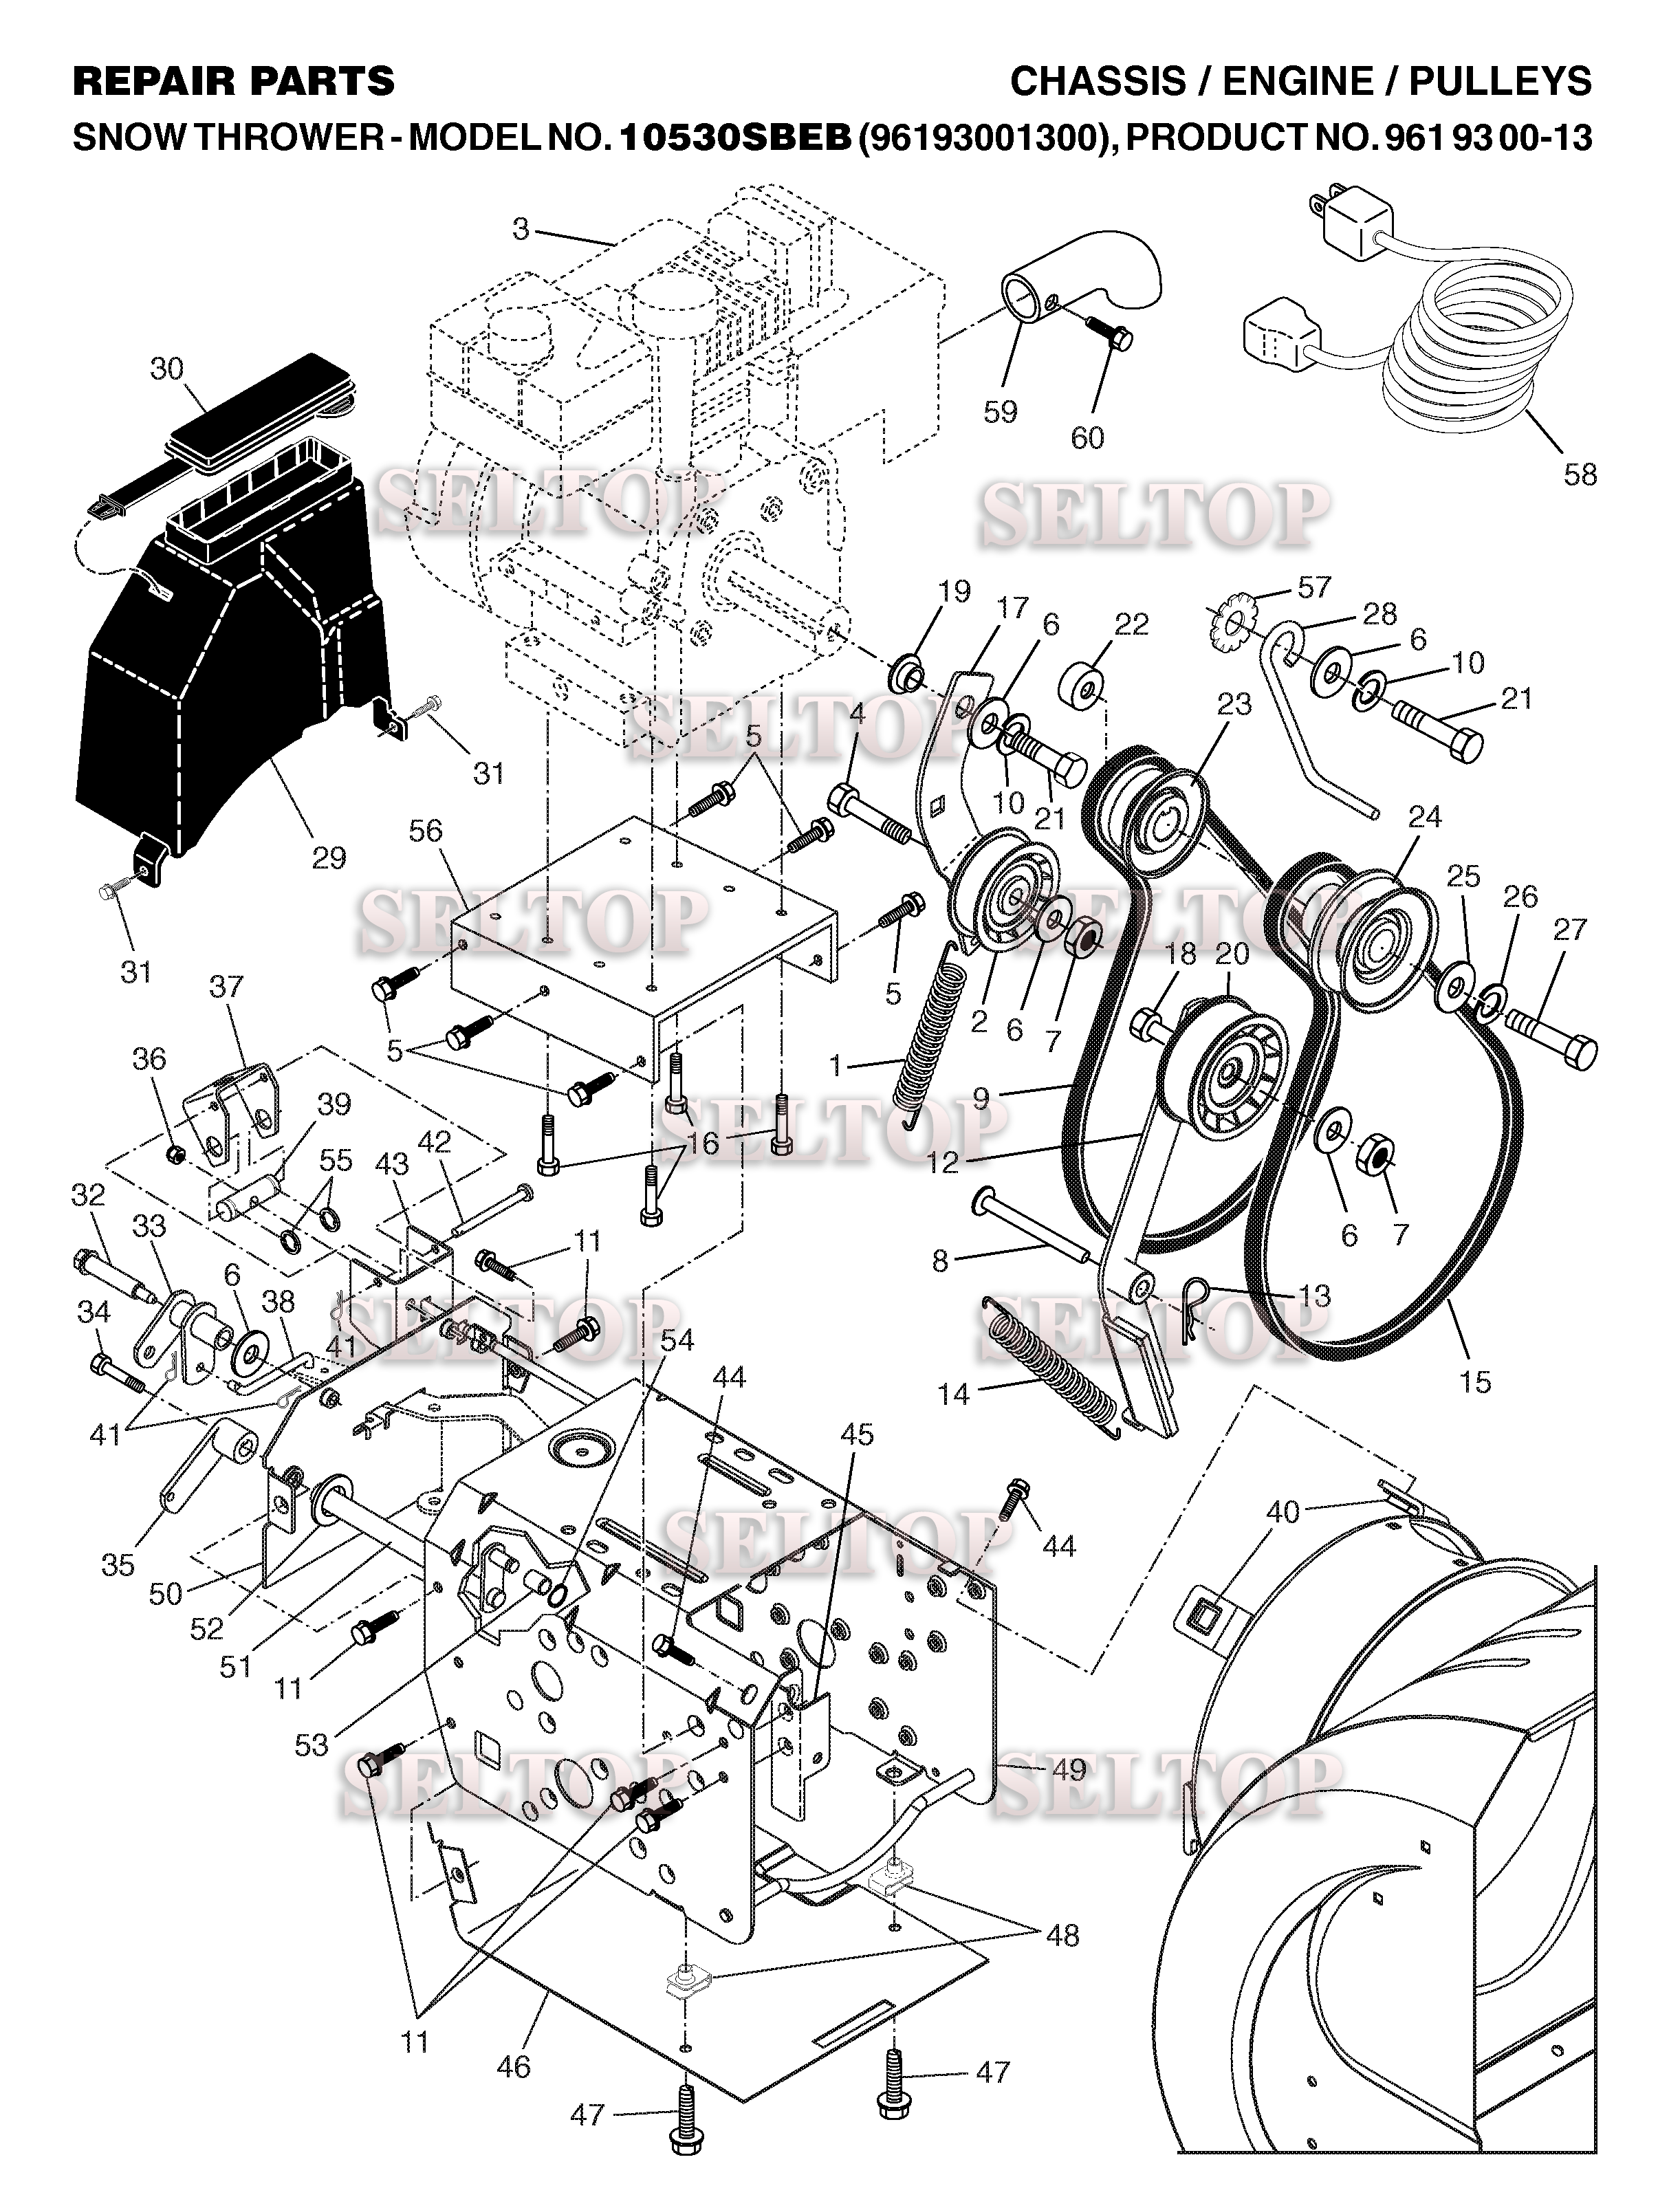 Шасси, двигатель, шкивы, ремни для Хускварна 10530 SBEB (артикул модели 961930013) (с 2006-06)